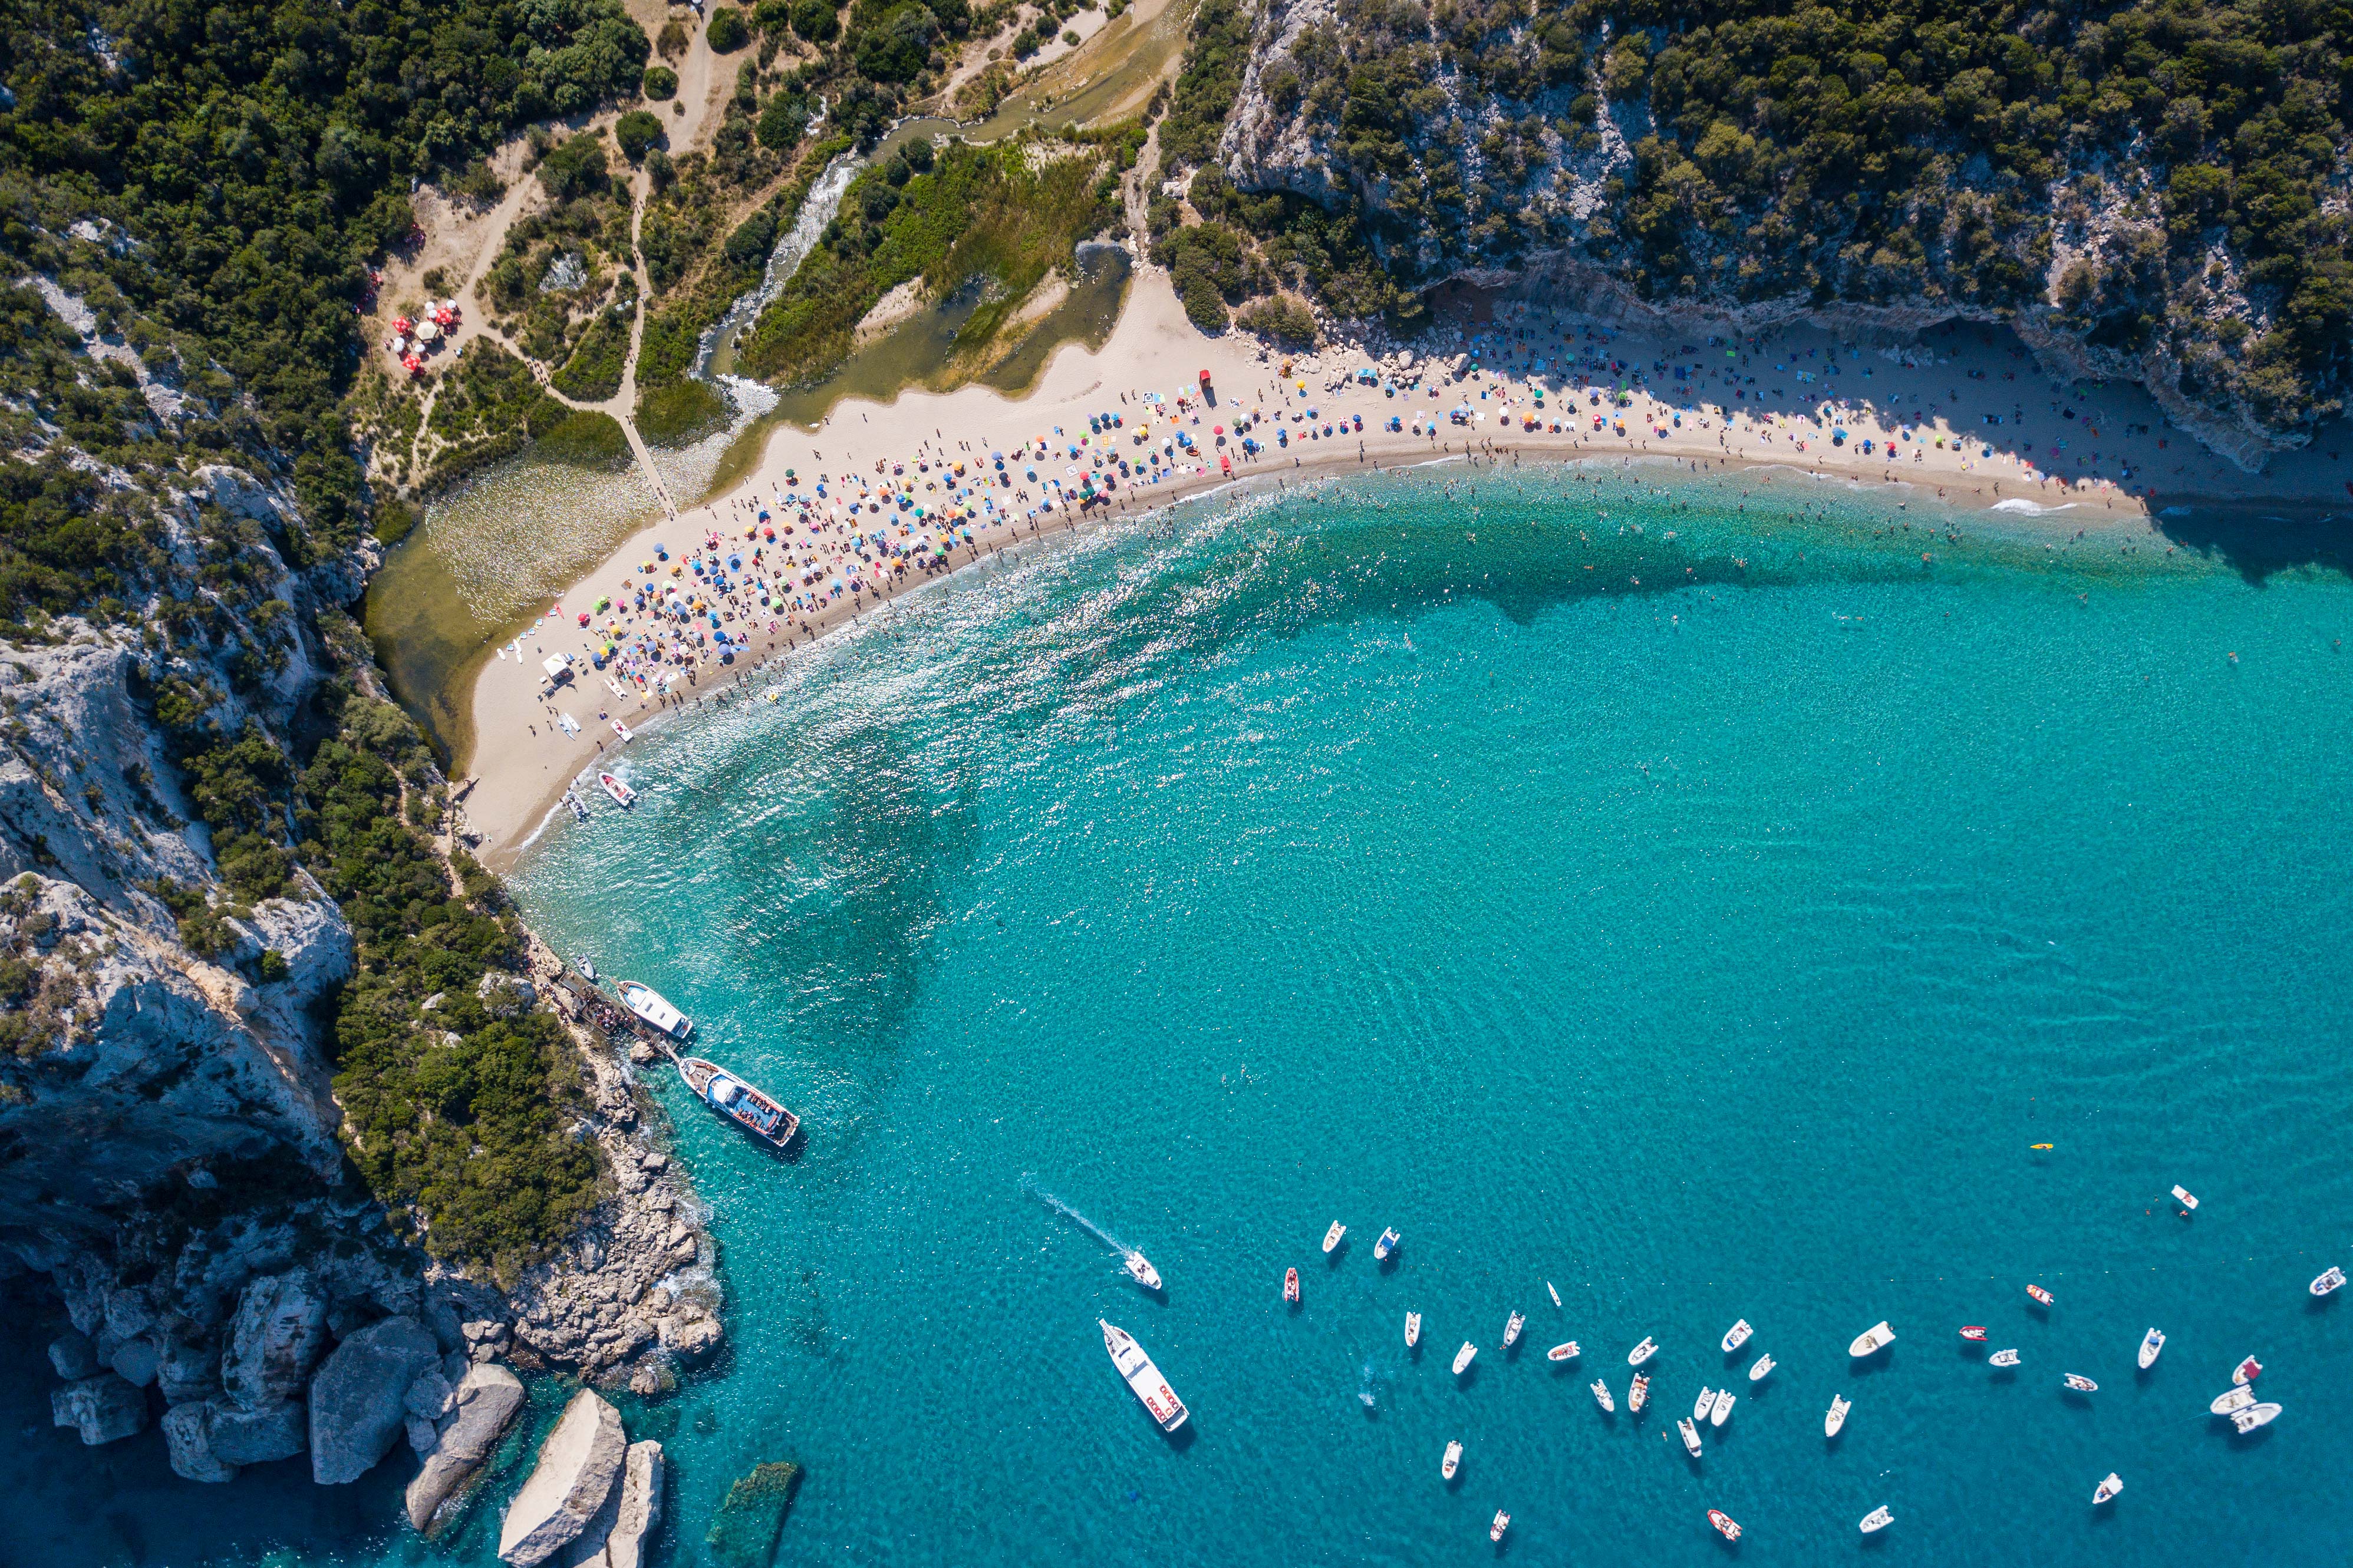 Sardinia, Italy: The Perfect Itinerary for Costa Smeralda